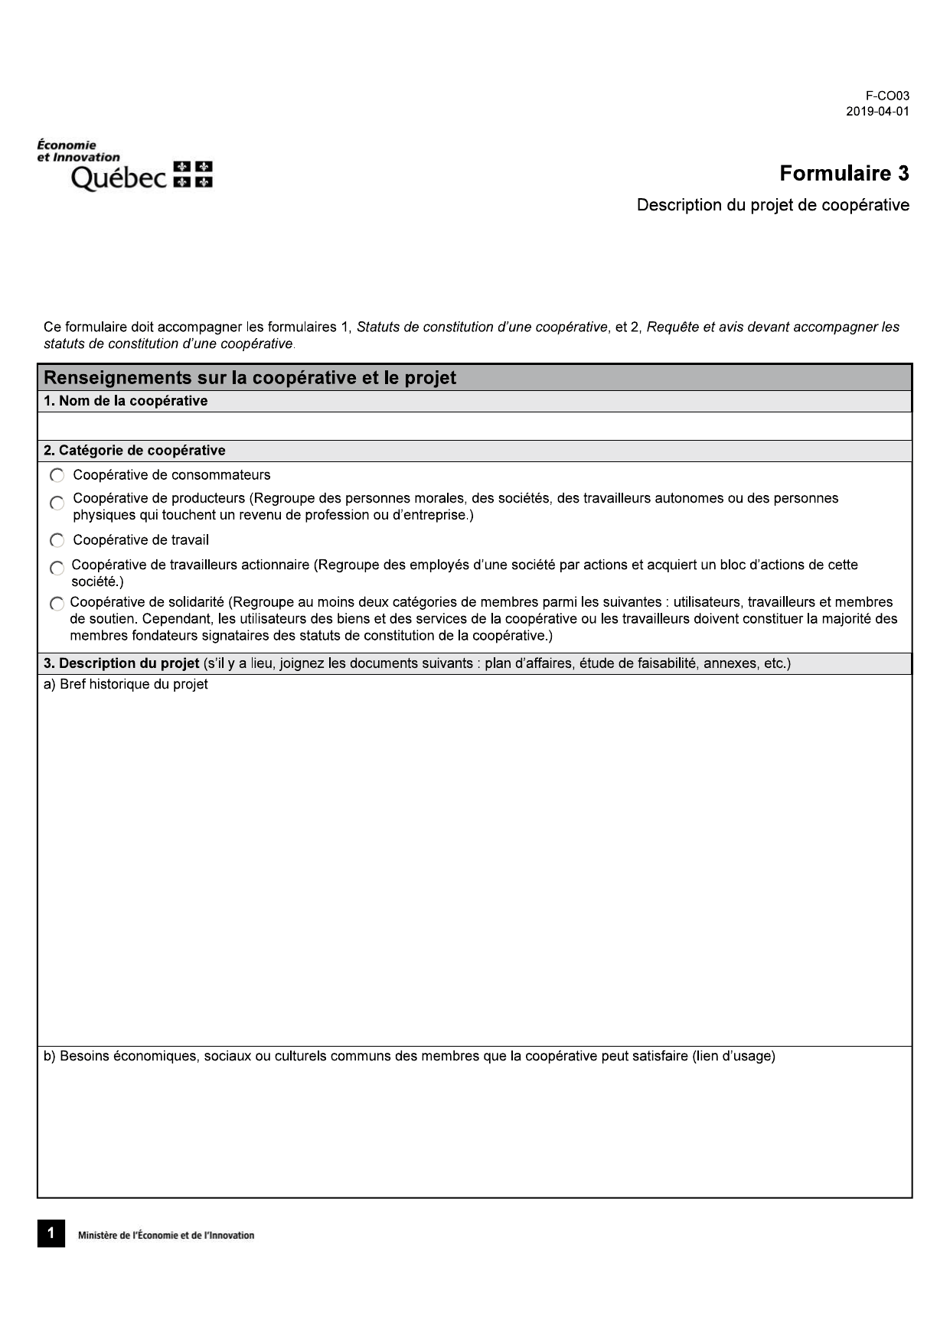 Forme 3 (F-CO03) Description Du Projet De Cooperative - Quebec, Canada (French), Page 1